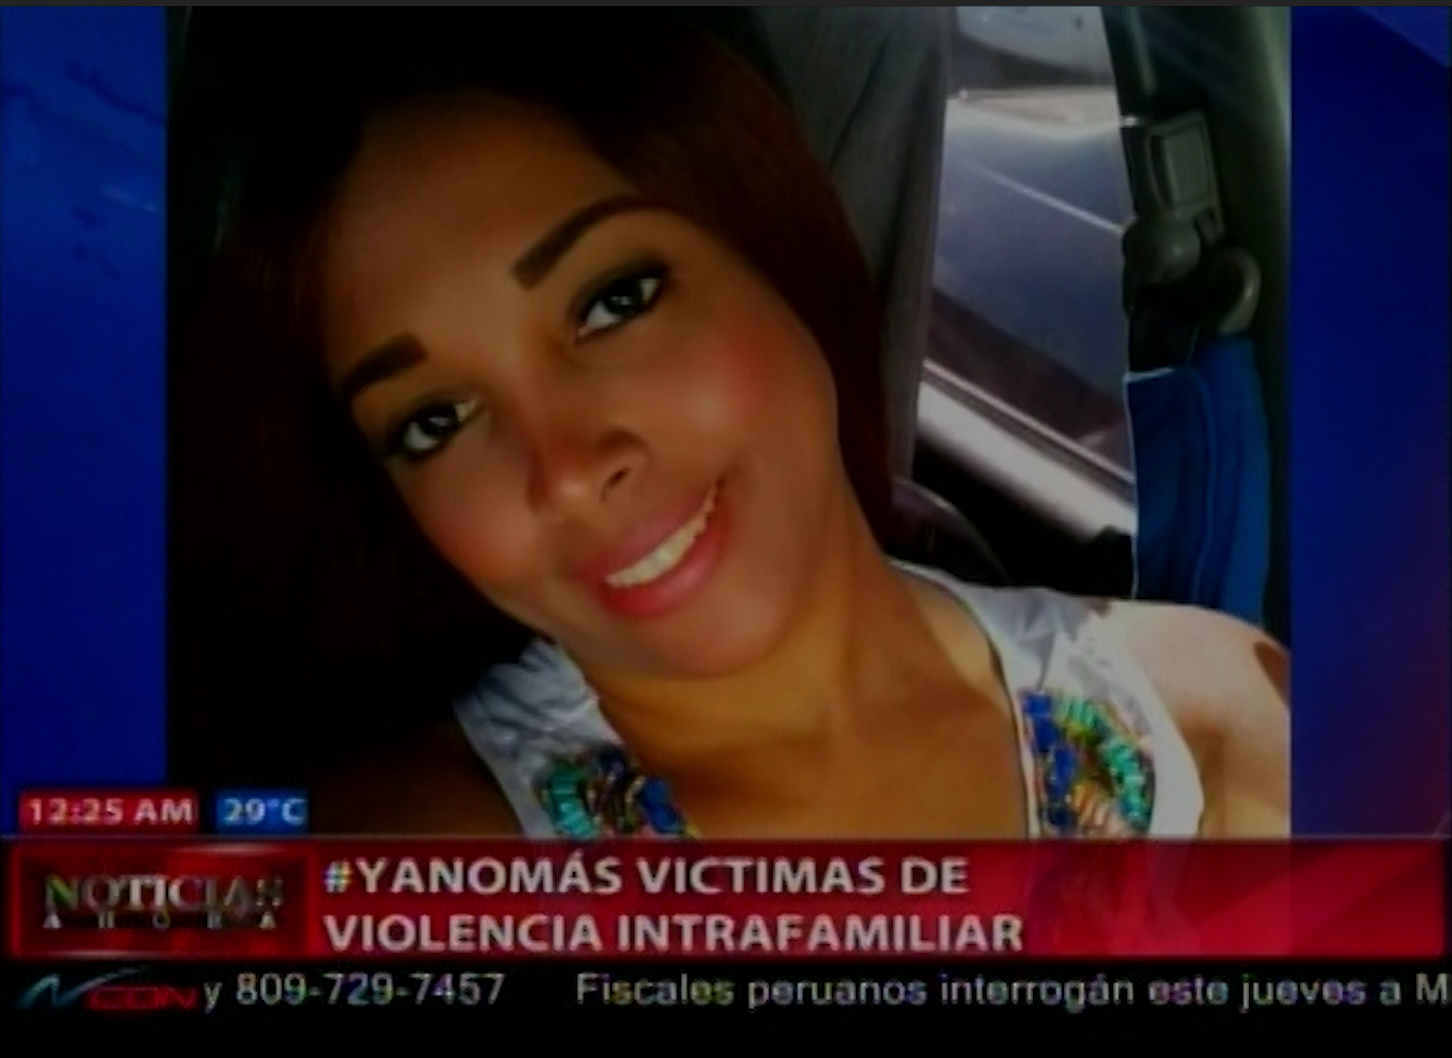 #YANOMAS Victimas De Violencia Intrafamiliar